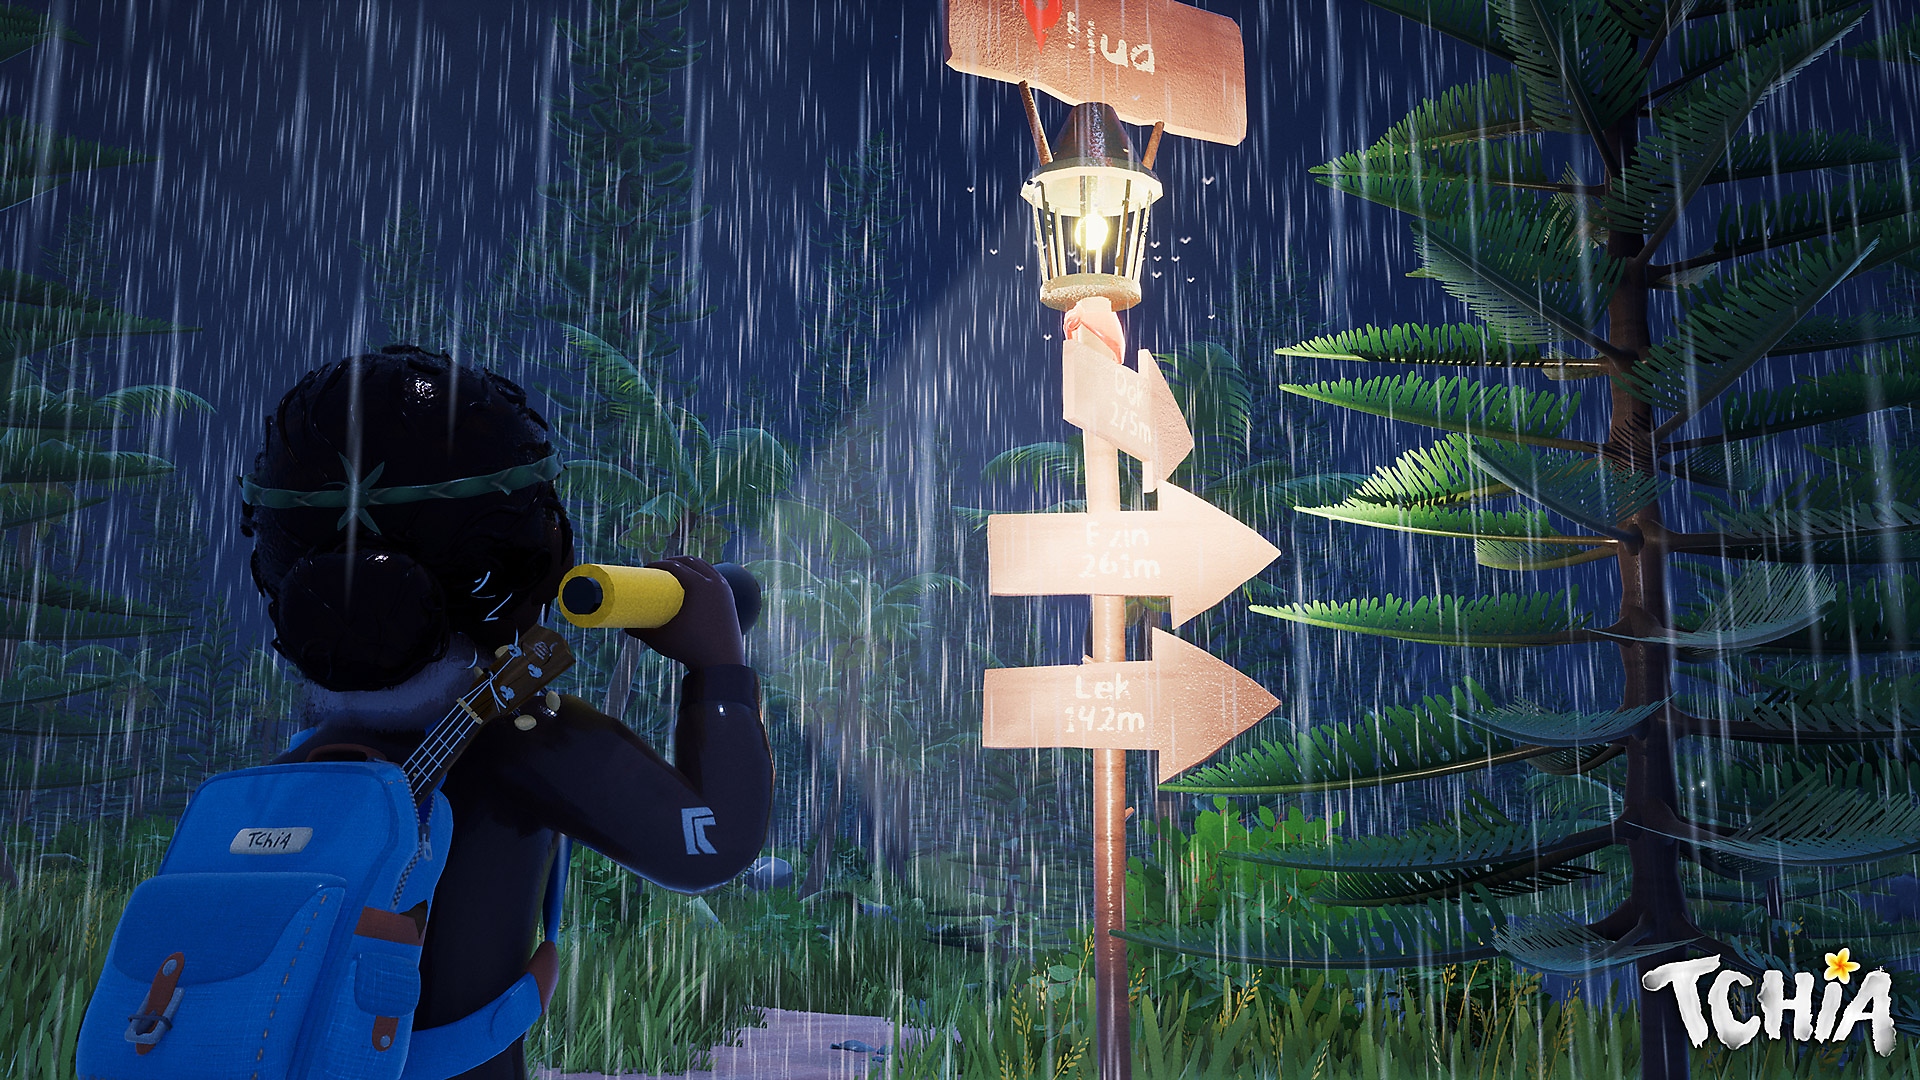 Tchia – снимок экрана, на котором персонаж стоит под дождем и смотрит на указатель 